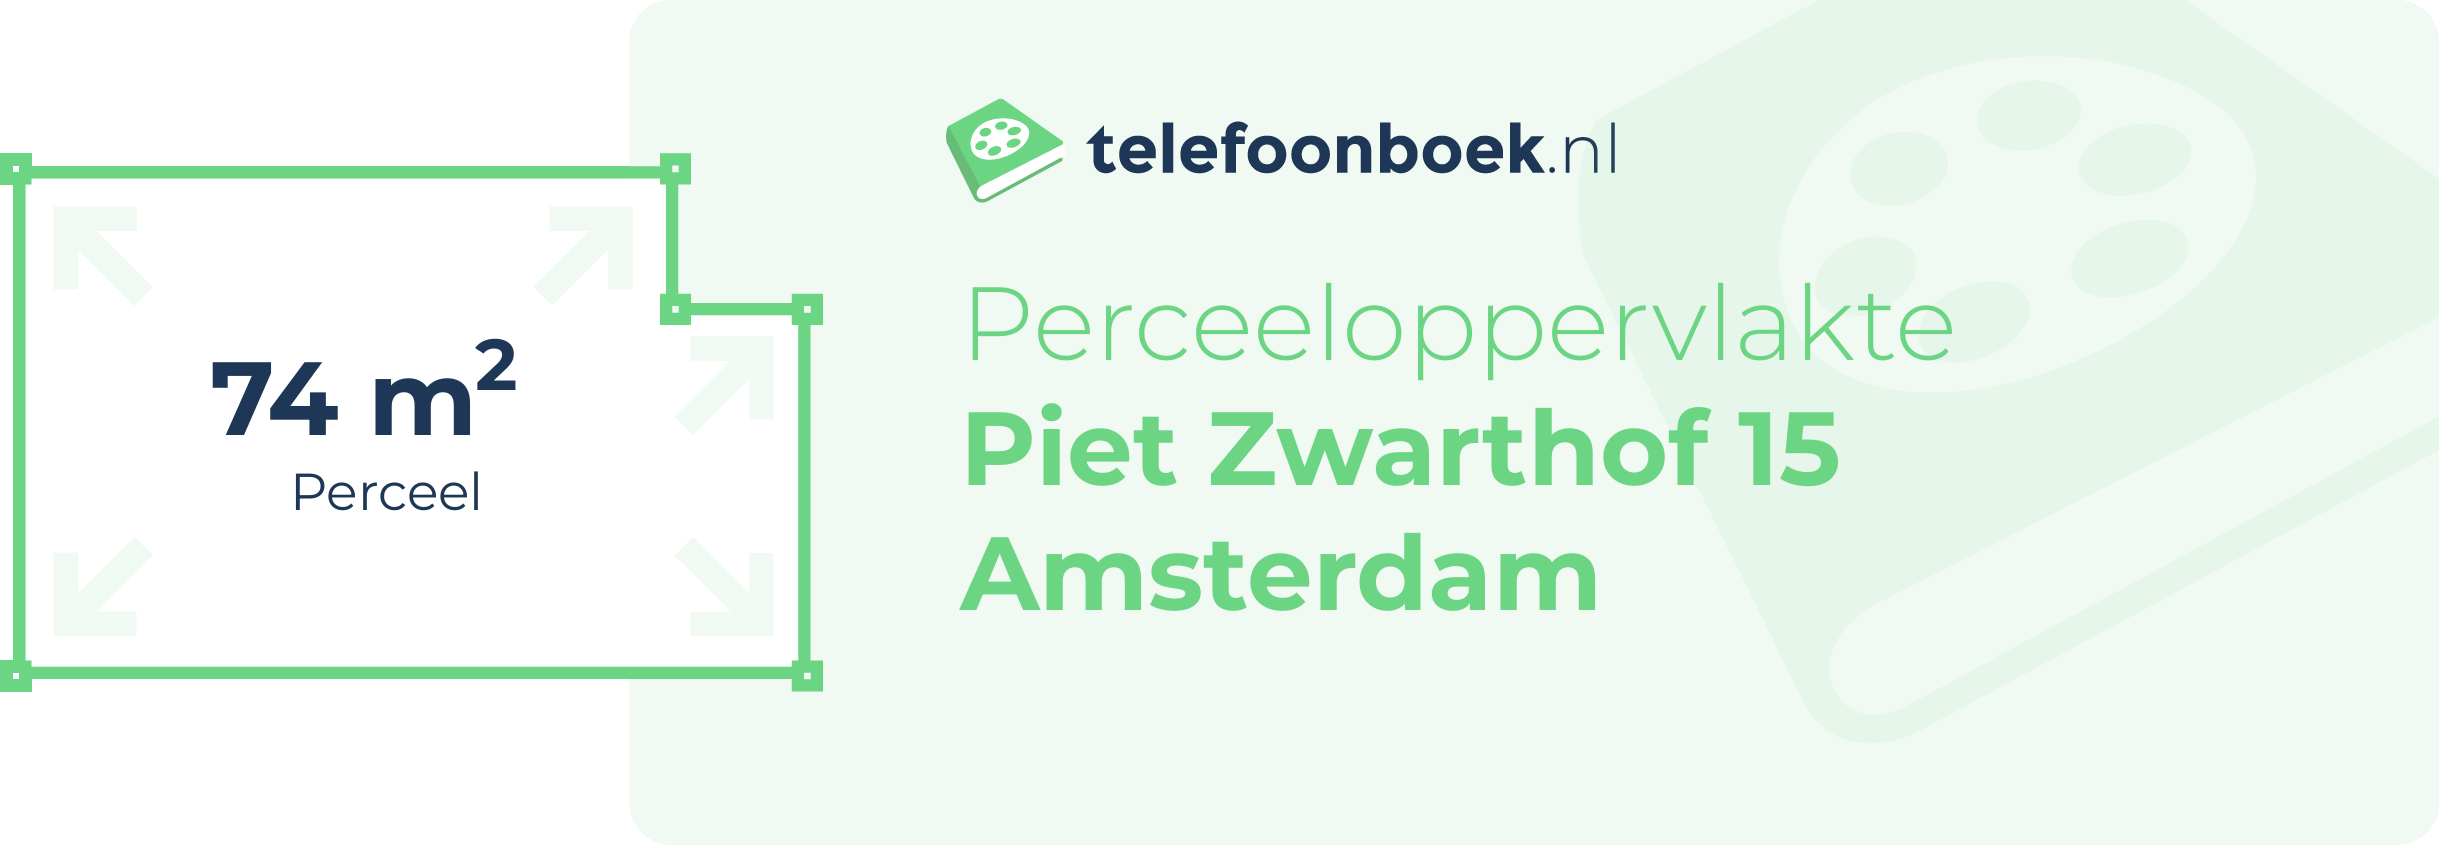 Perceeloppervlakte Piet Zwarthof 15 Amsterdam